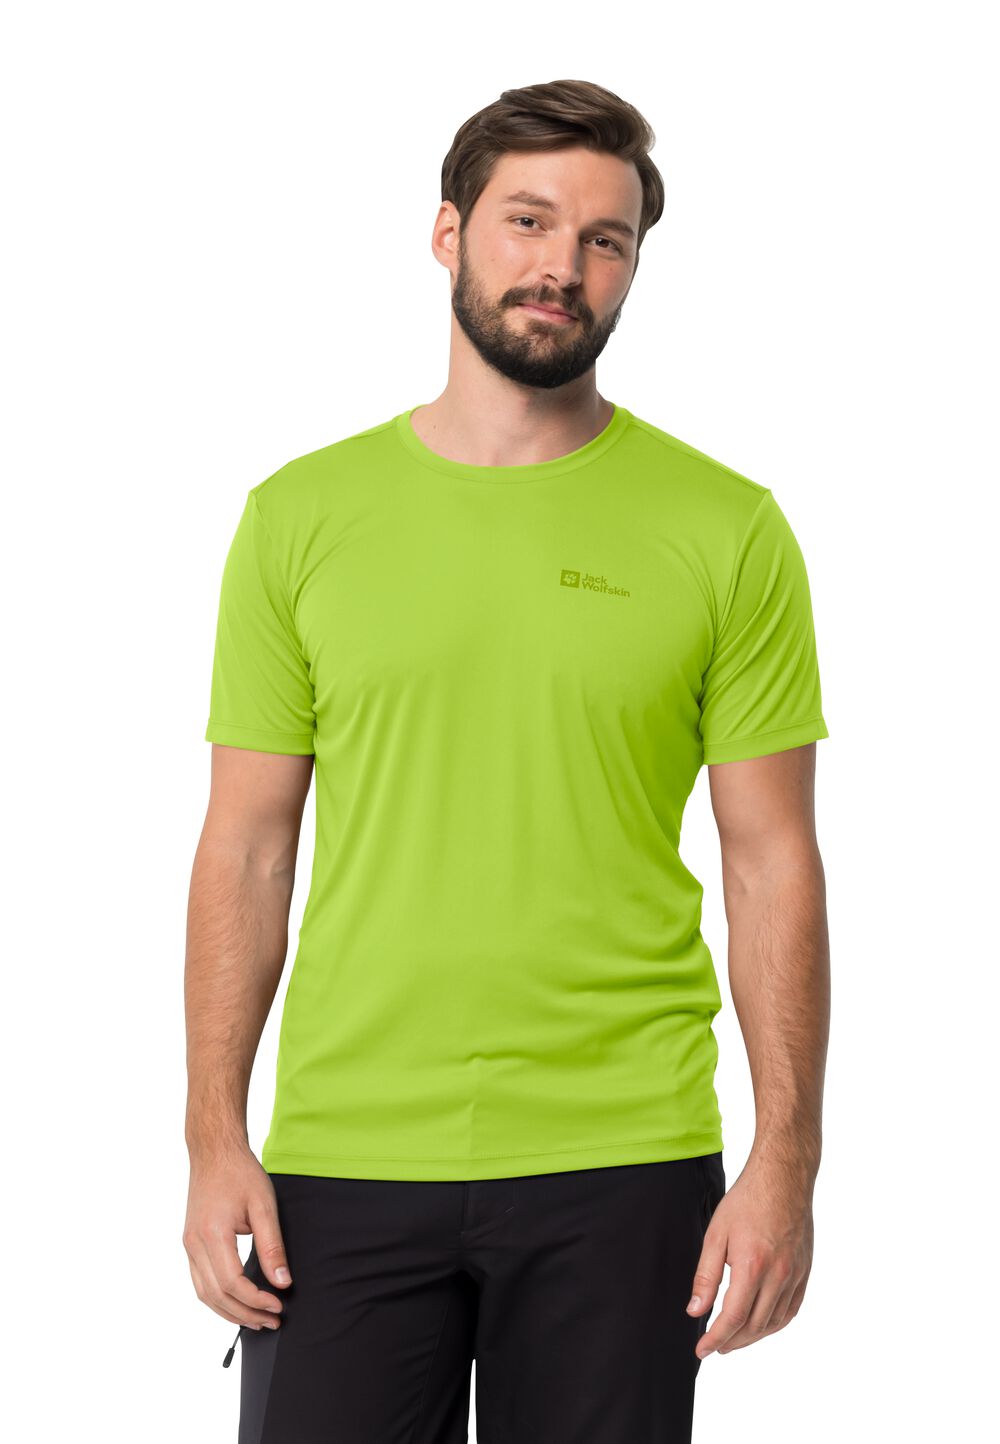 Jack Wolfskin Funktionsshirt Herren Tech T-Shirt Men L fresh green fresh green von Jack Wolfskin